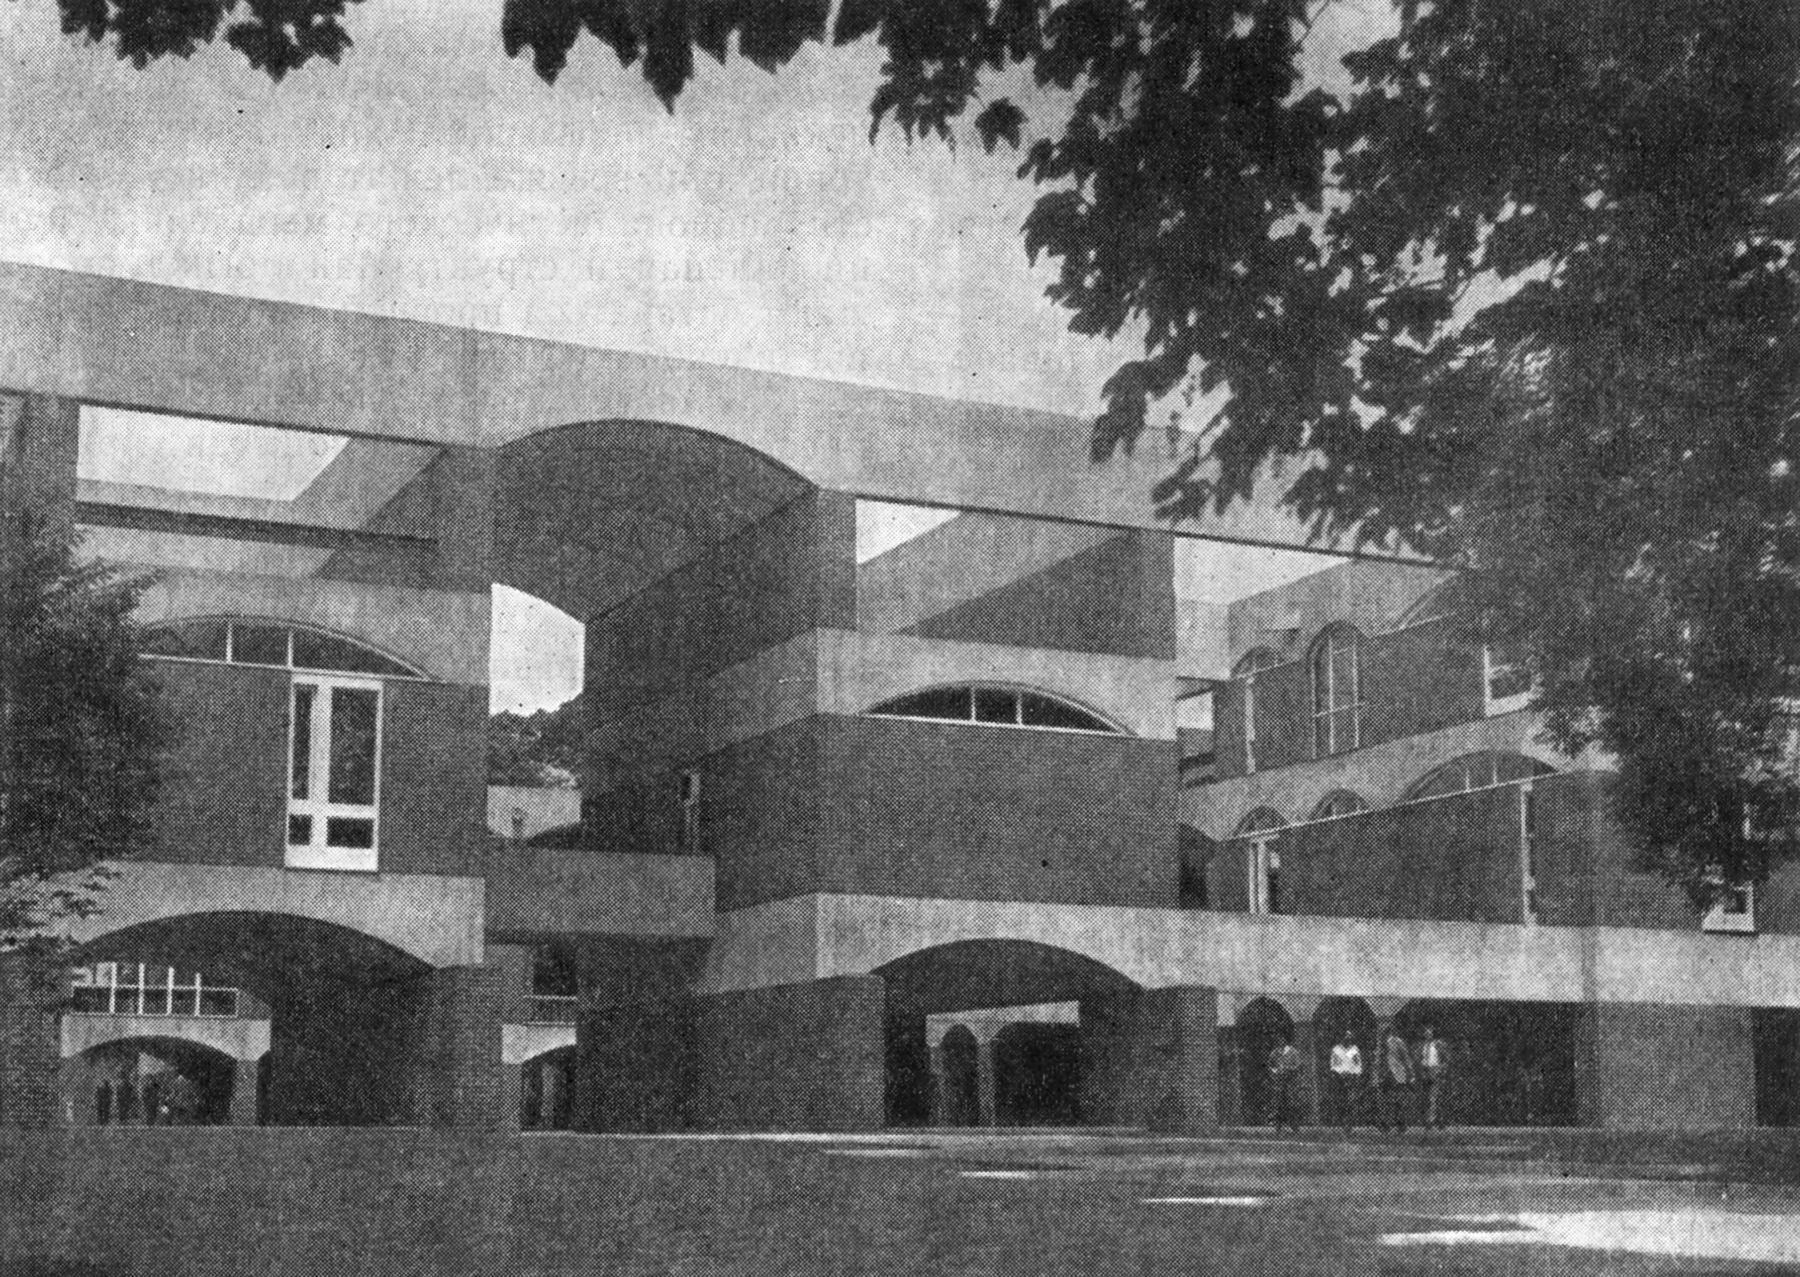 28. Сассекс. Библиотека университета, 1965 г. Архитекторы Б. Спенс и М. Огден. Общий вид и фрагмент